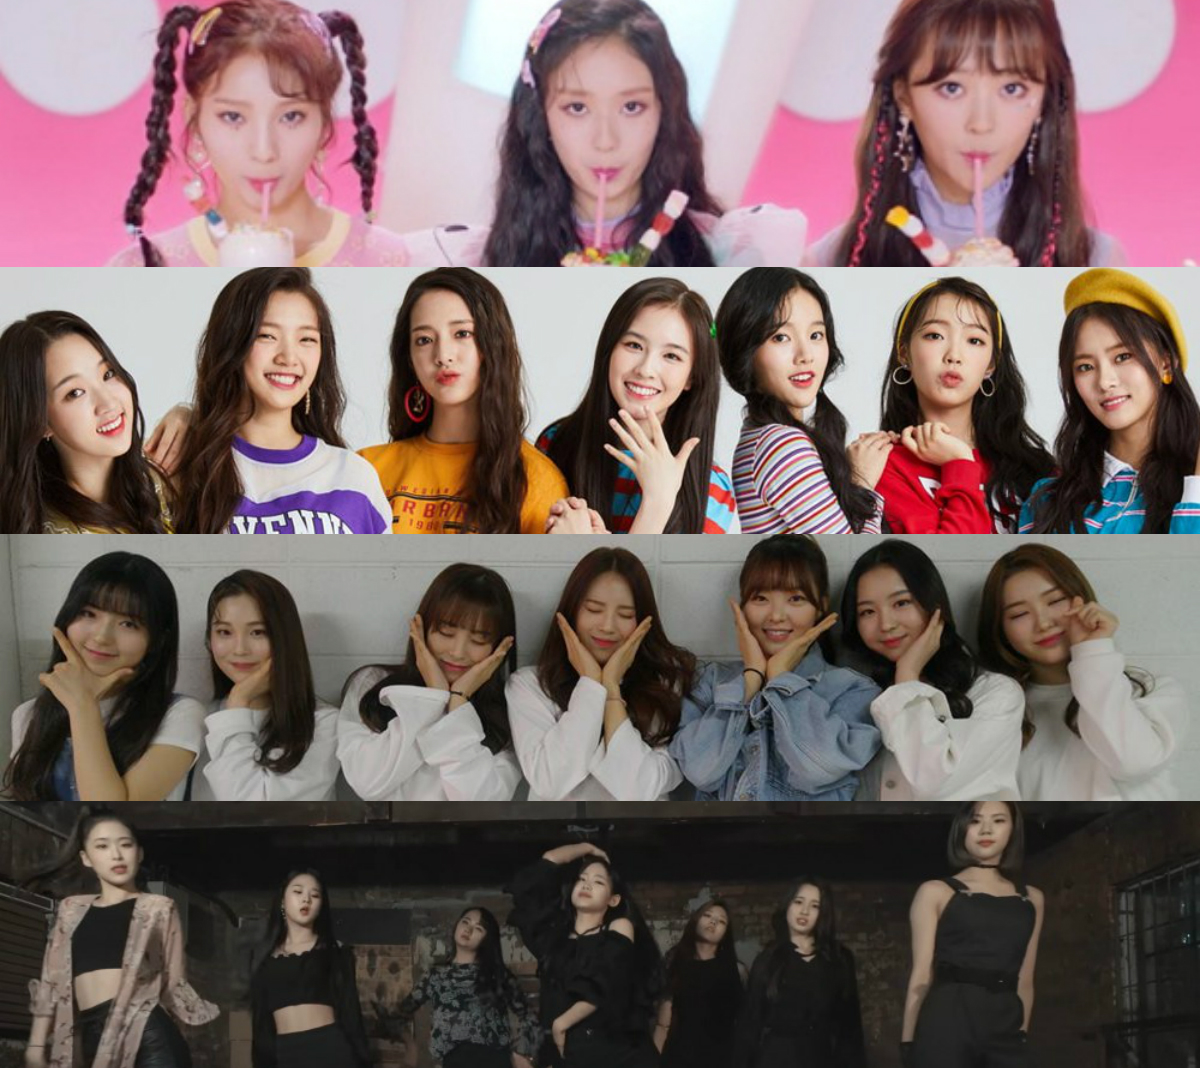 4 Girl Group Yang Akan Debut Di Tahun 2019